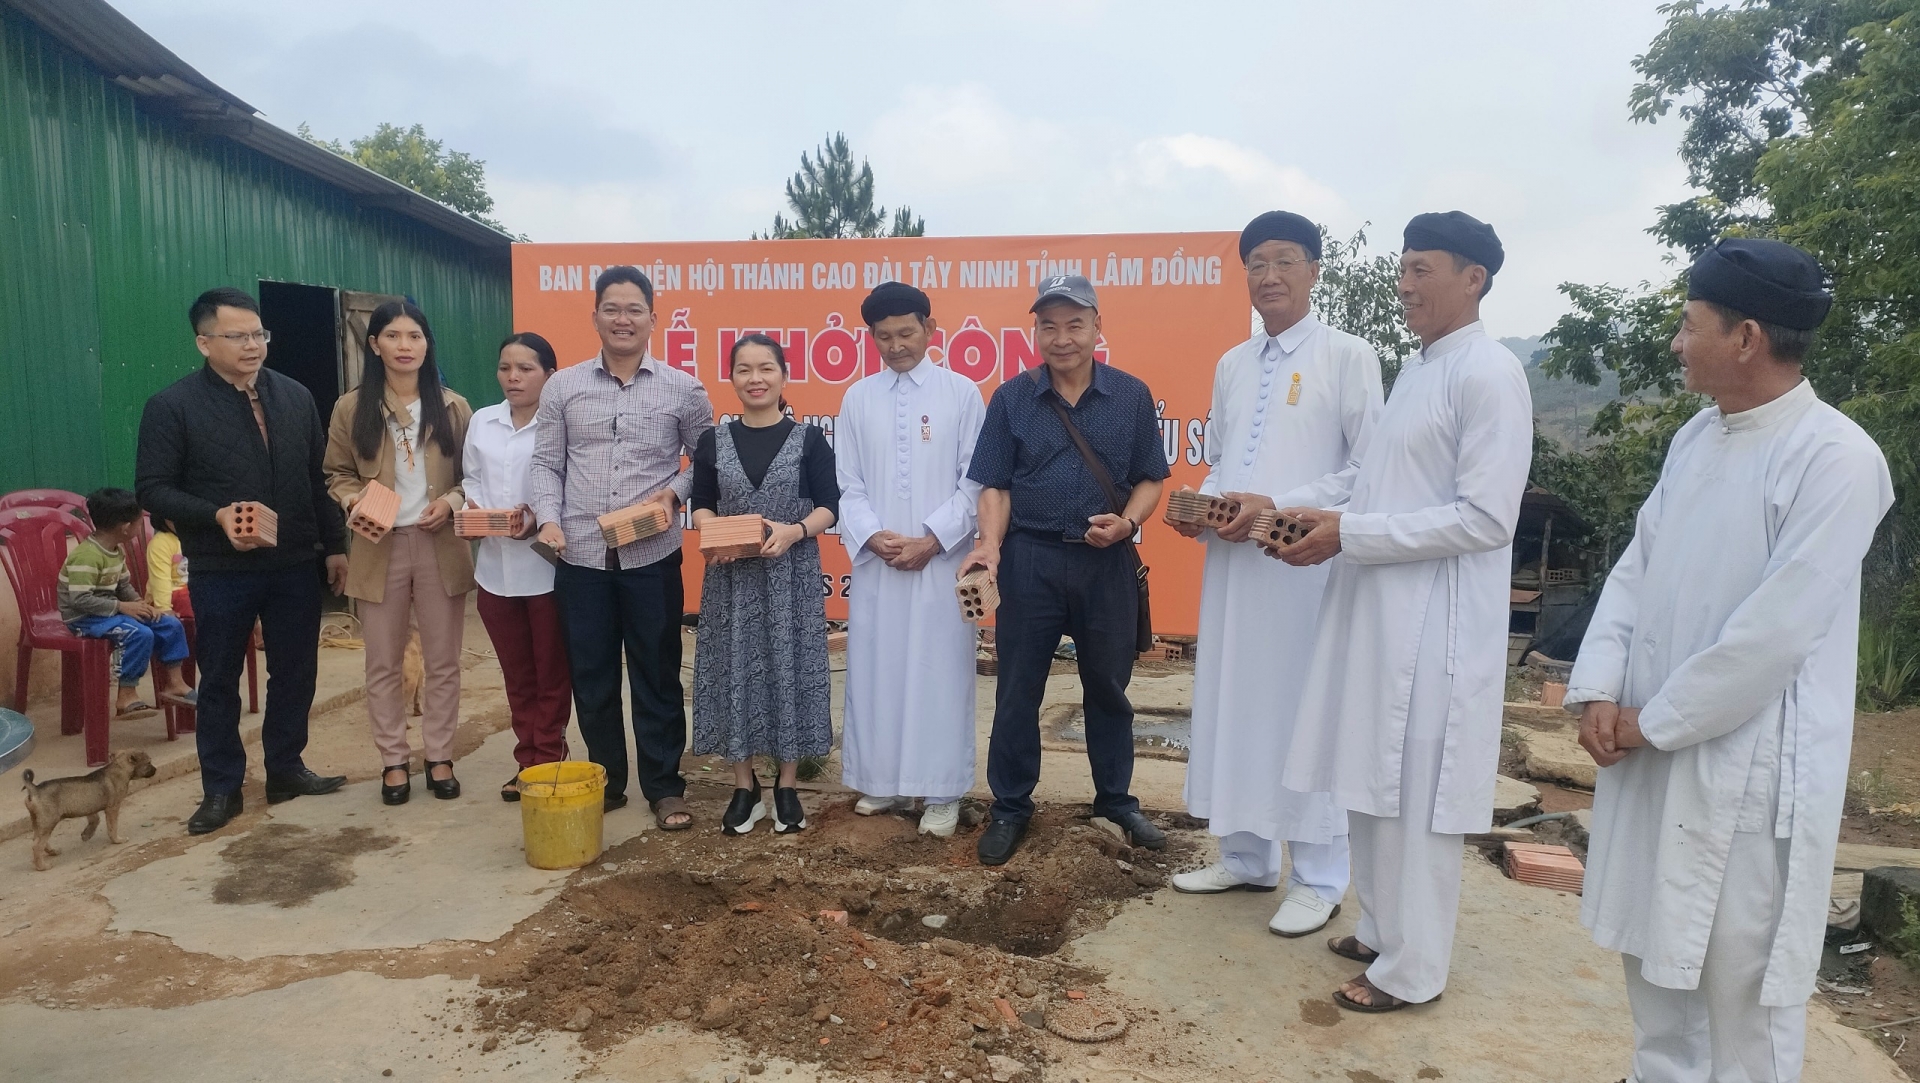 Hội thánh Cao Đài Toà thánh Tây Ninh tỉnh Lâm Đồng khởi công xây dựng nhà cho đồng bào nghèo